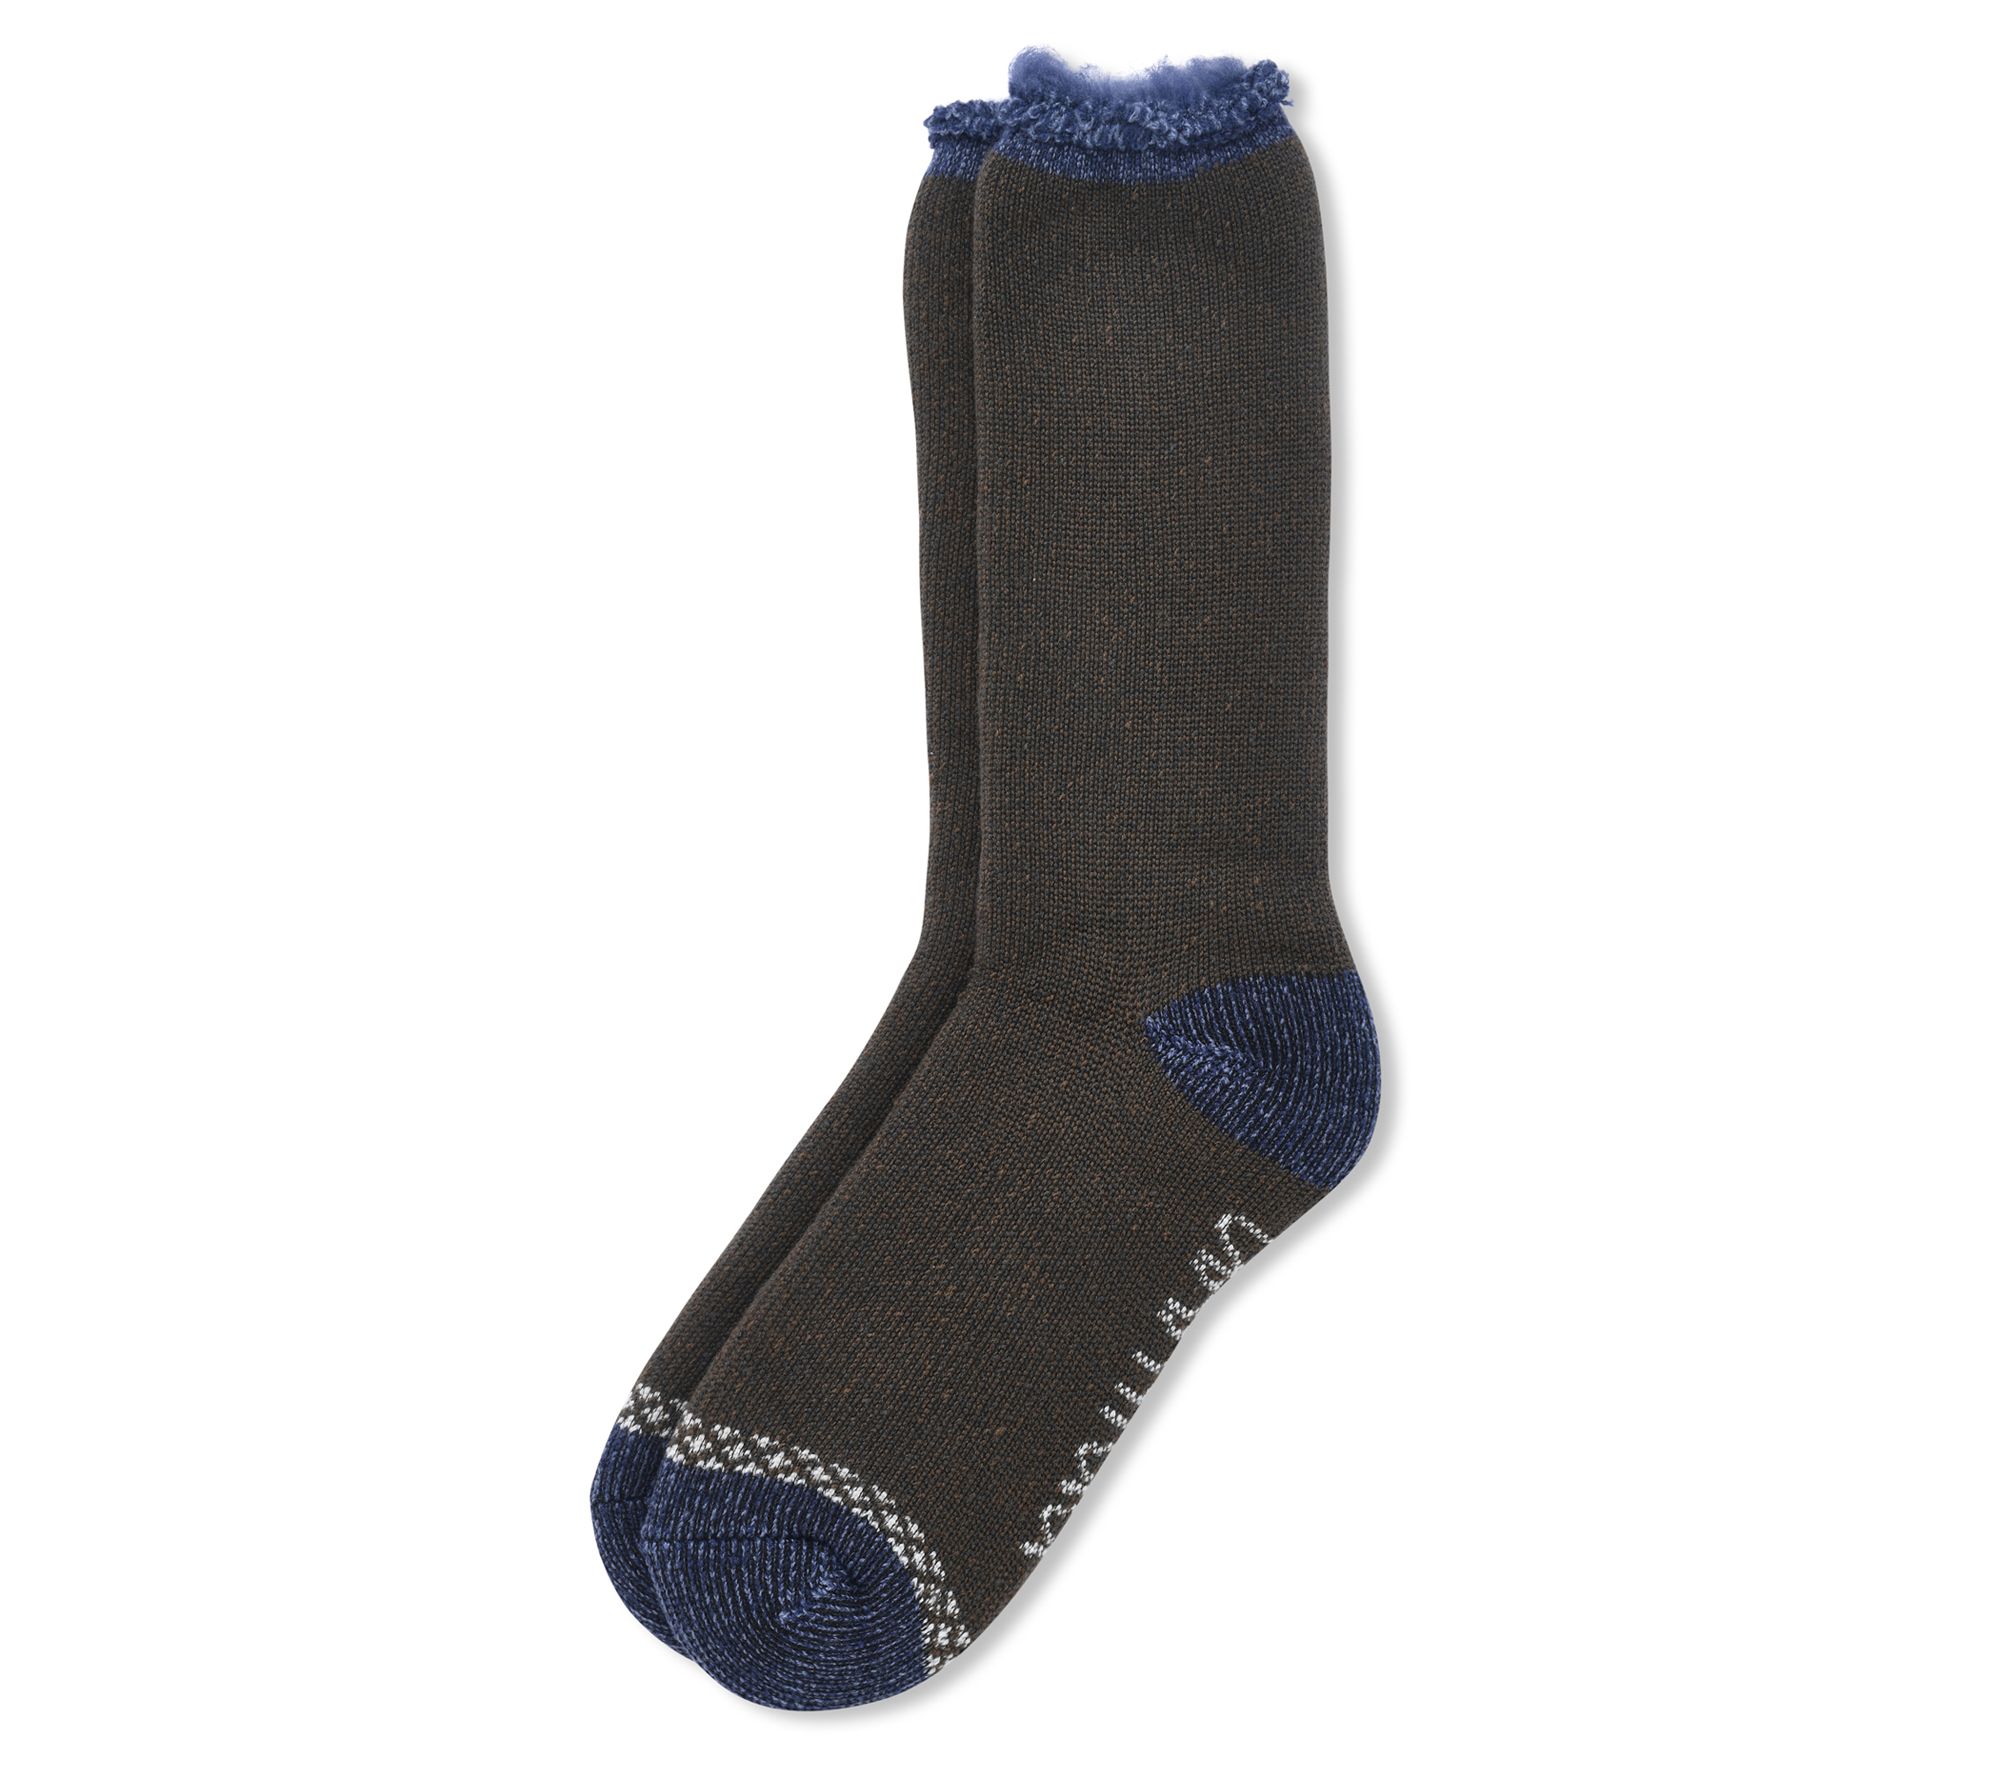 NCAA Game Day Socks, Slipper Socks and Heat Retainers – MUK LUKS